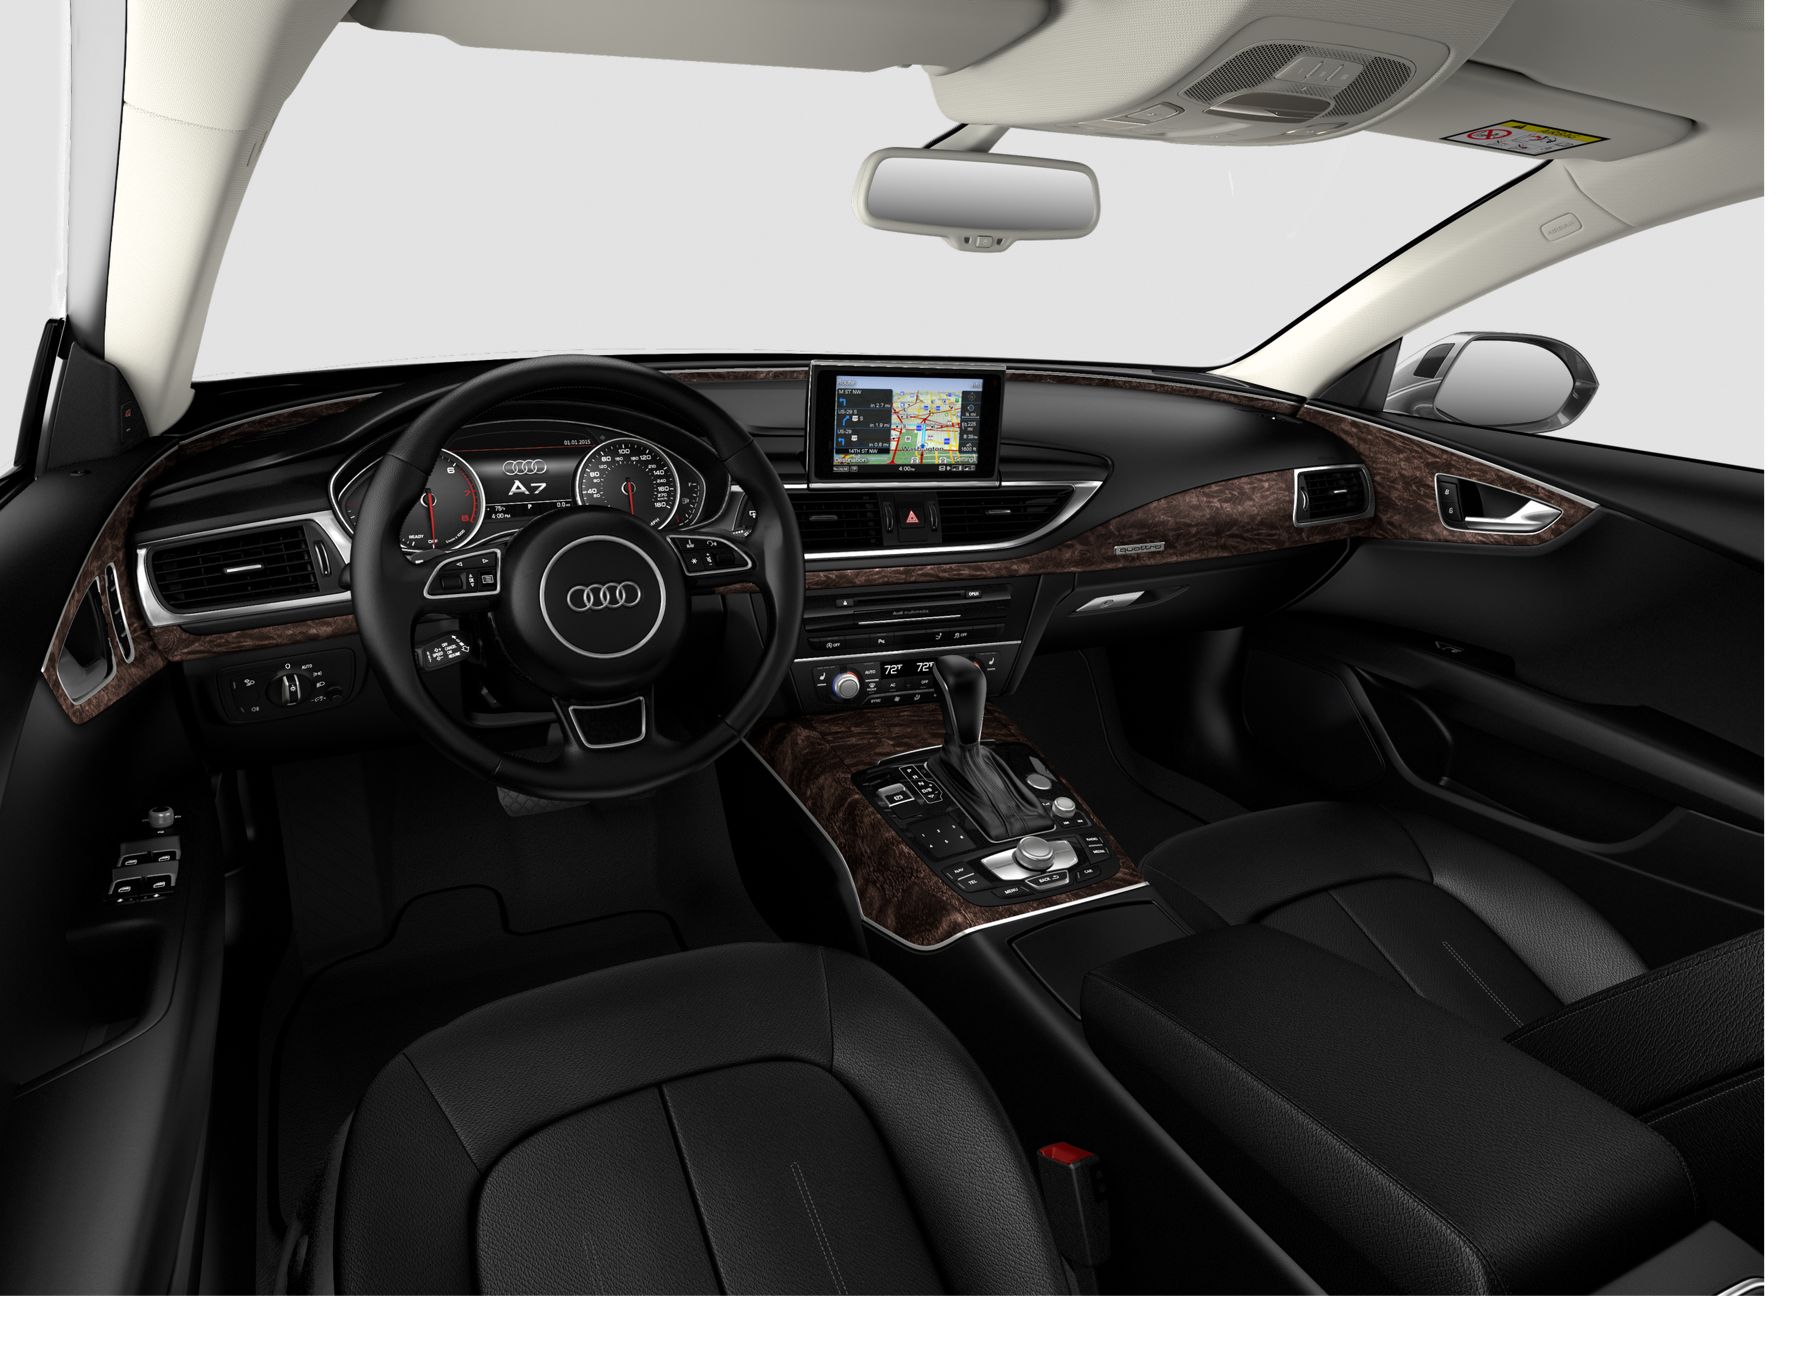 Audi A7 Premium Plus interior front view